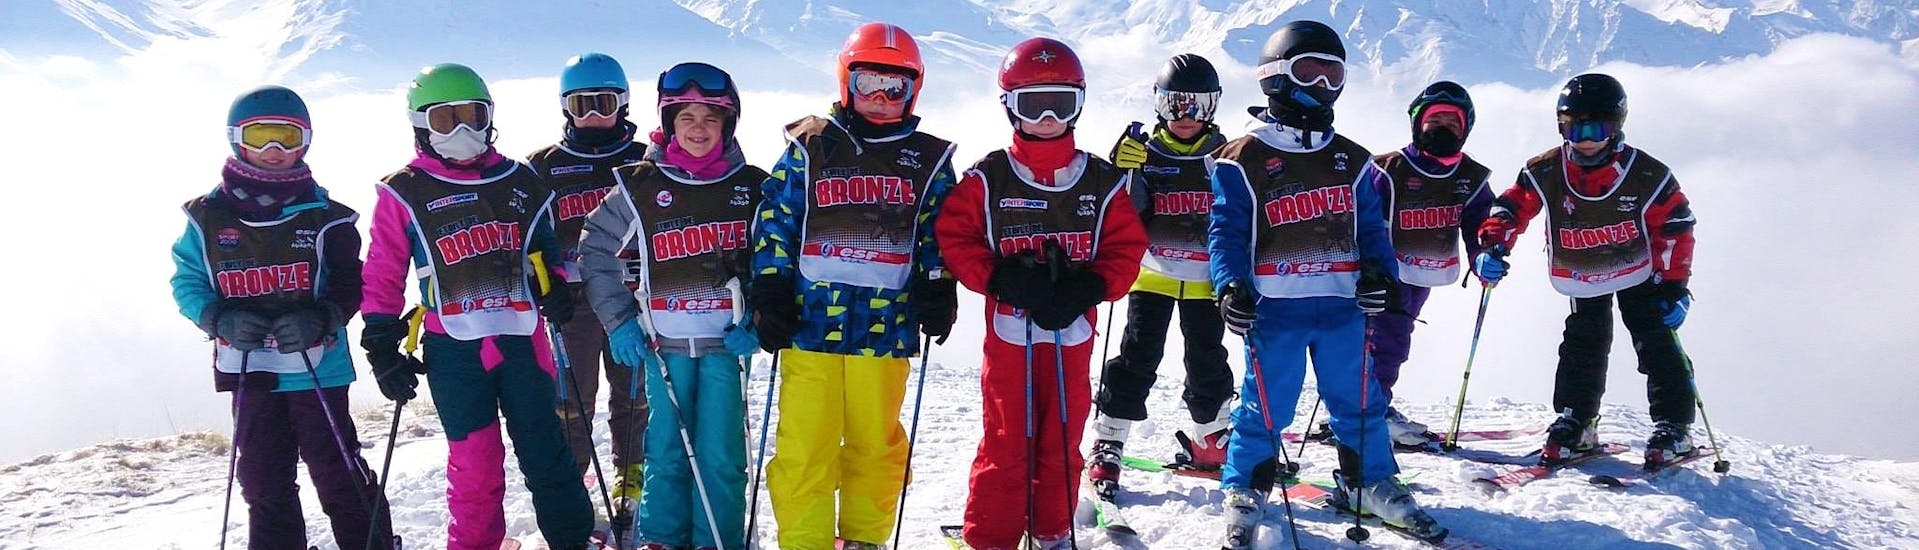 Des enfants prennent une photo devant un fond enneigé à la fin de leur Cours de ski Enfants (5-12 ans) - Basse saison avec l'école de ski ESF Aussois.